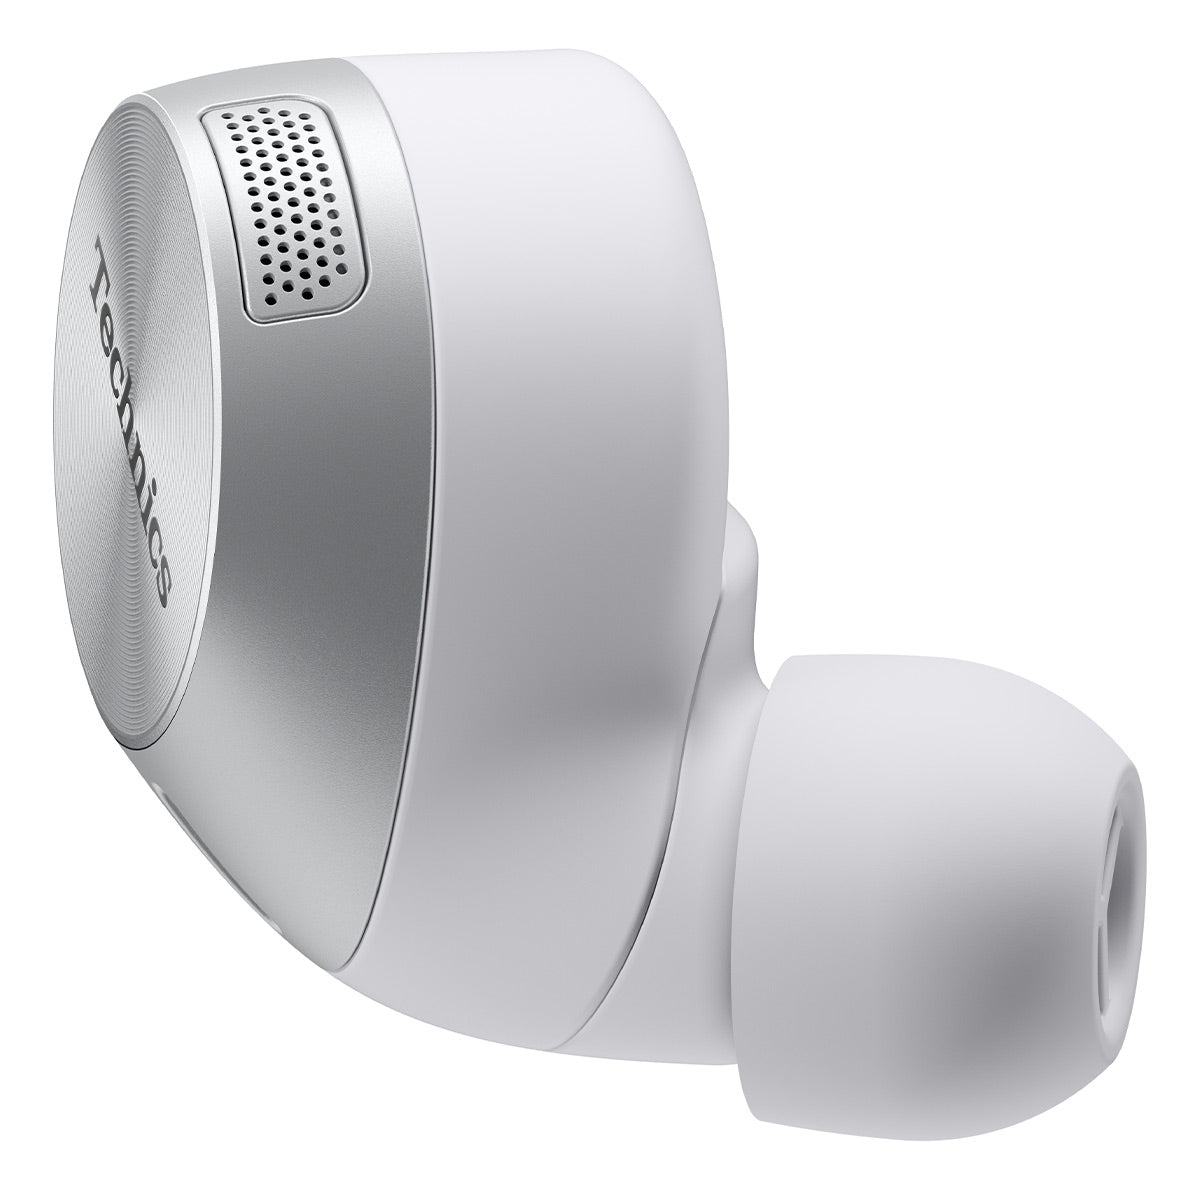 Technics EAH-AZ60-S True Wireless Earbuds (Silver)